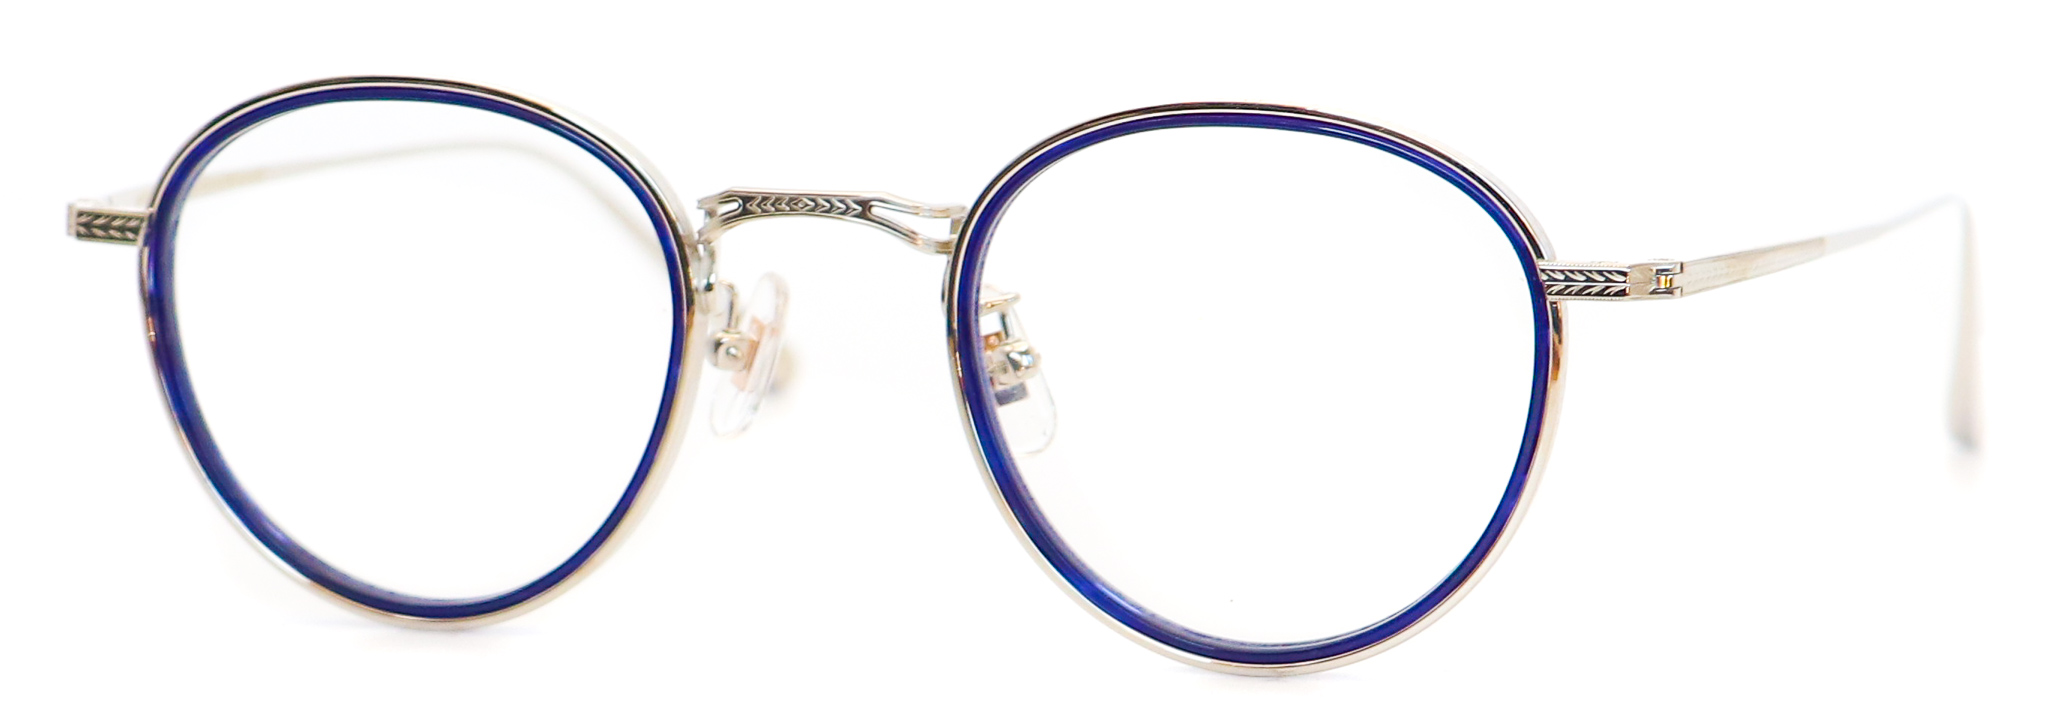 眼鏡のカラータイプC-2 Blue/Silver